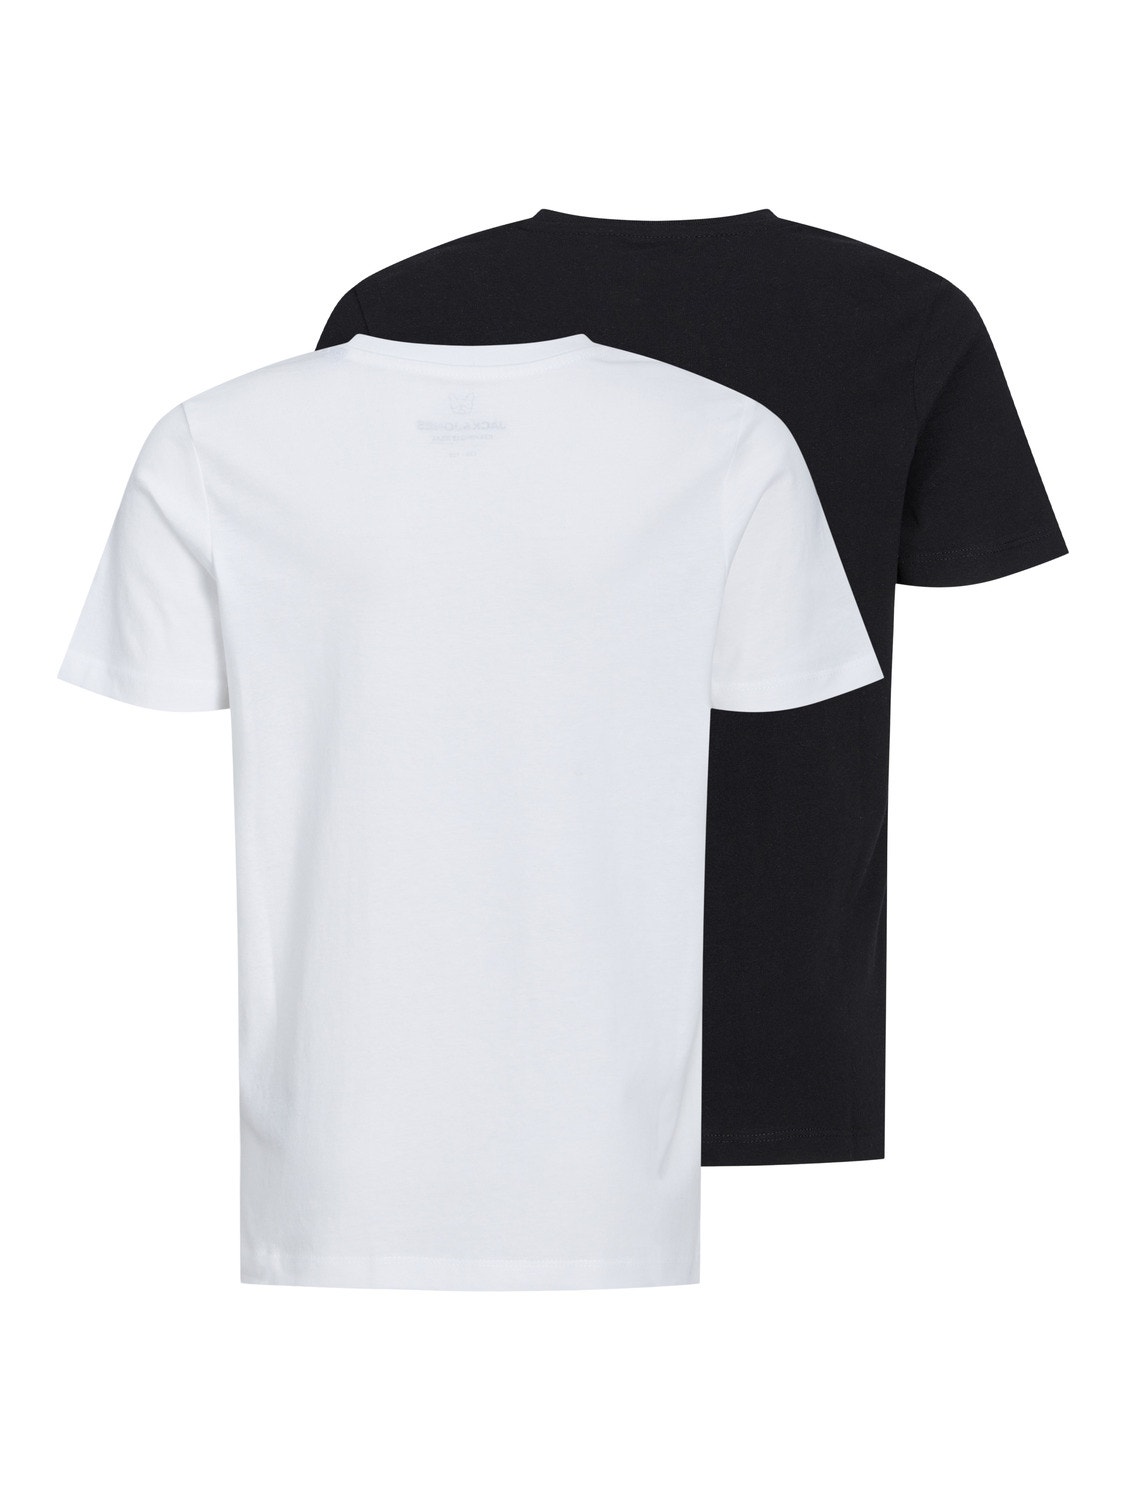 Jack & Jones 2-pakning Logo T-skjorte For gutter -Black - 12249848